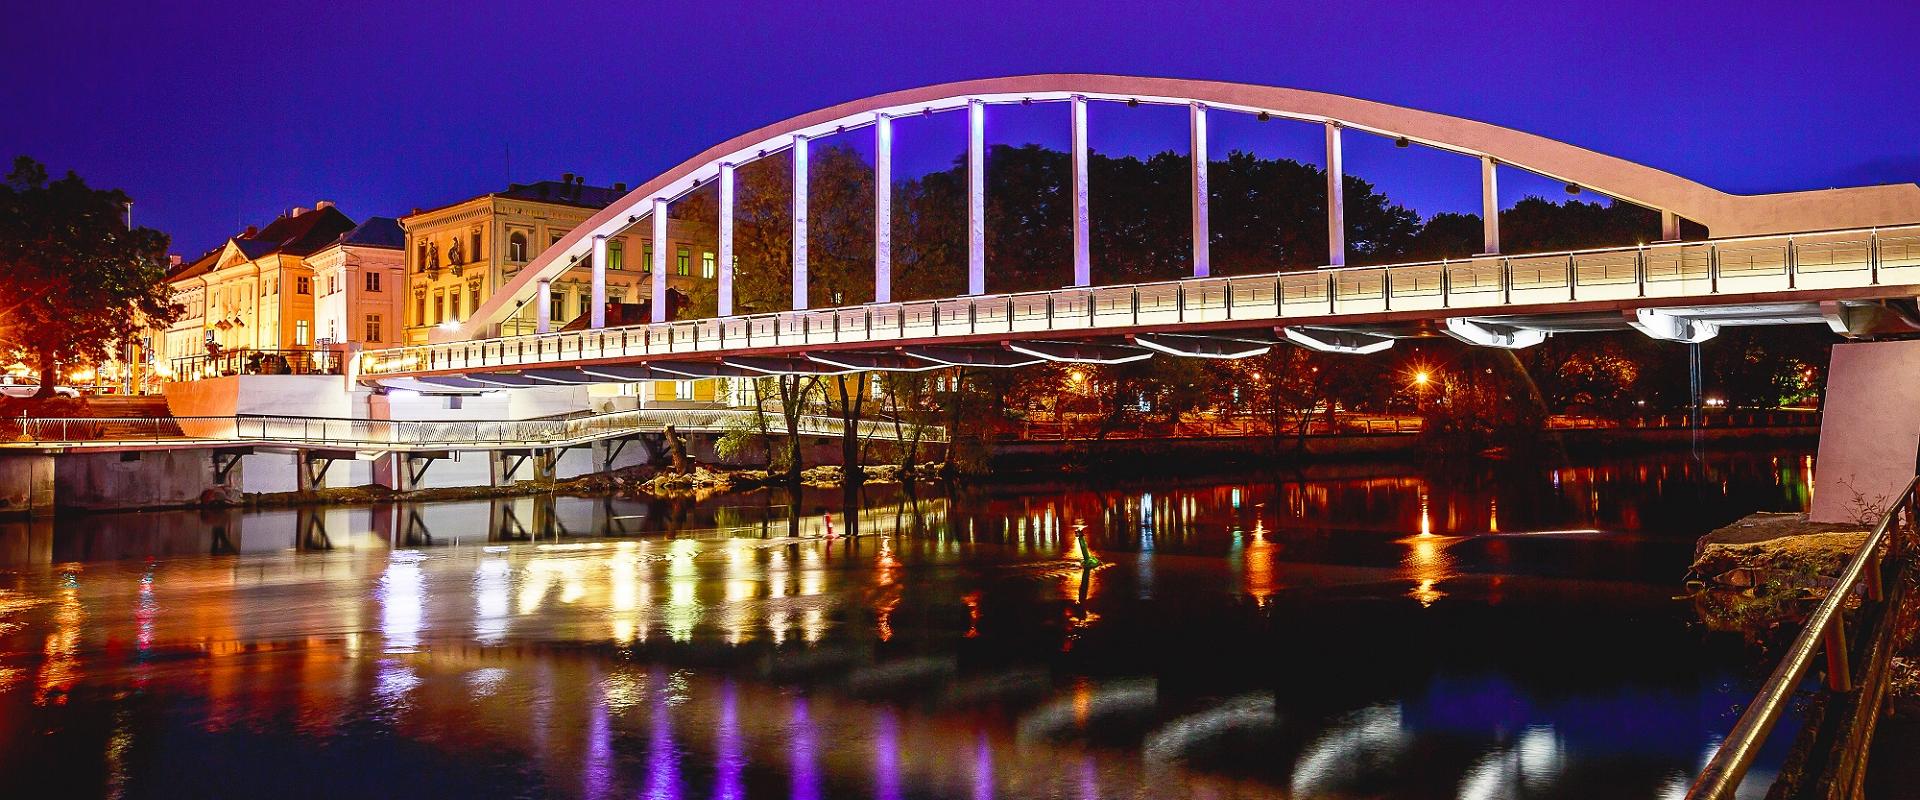 Die Bogenbrücke im Licht eines Sommerabends, das Licht spiegelt sich im Emajõgi (dt. Embach)